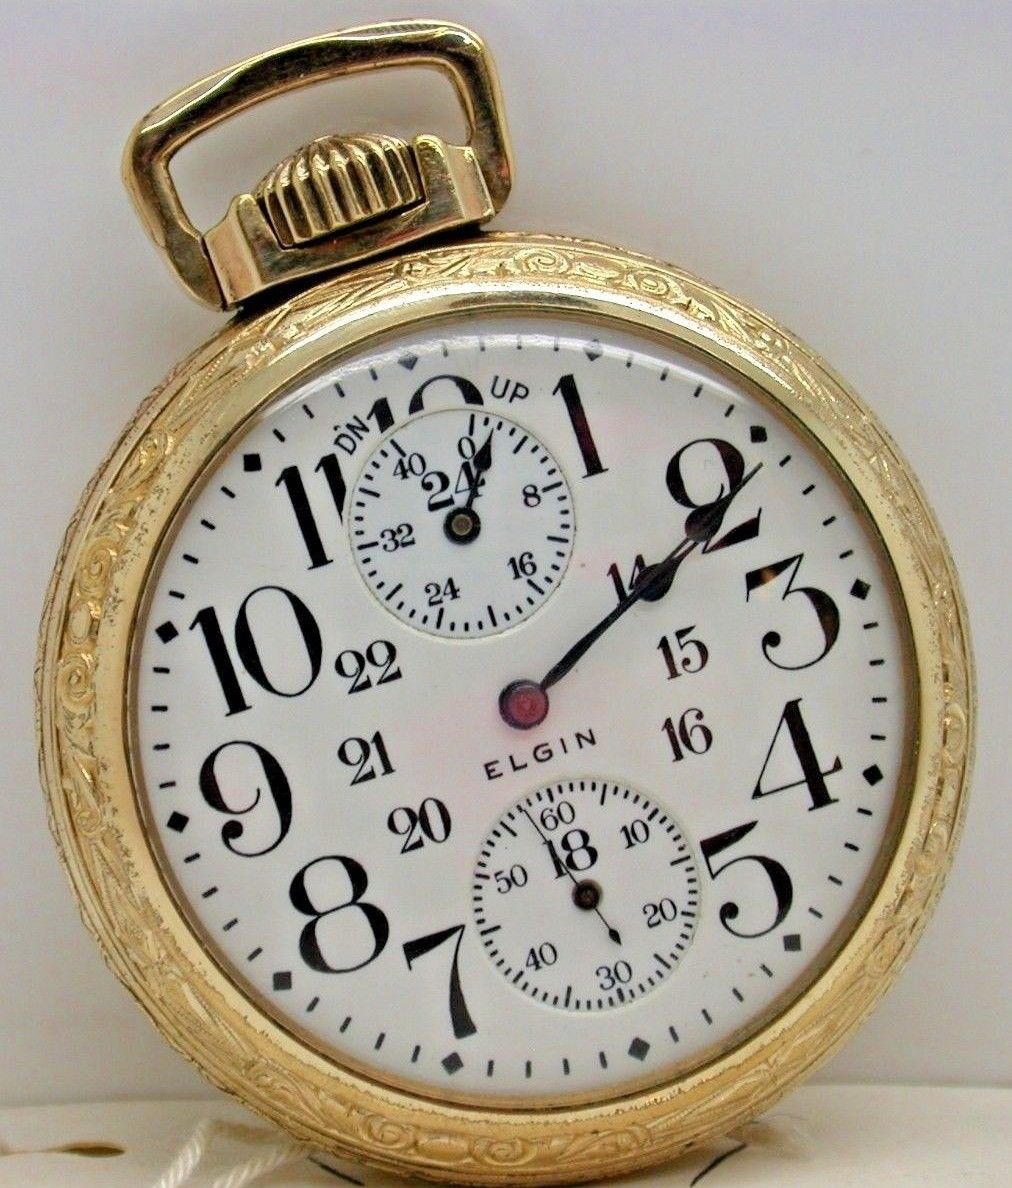 1911 rolex pocket watch